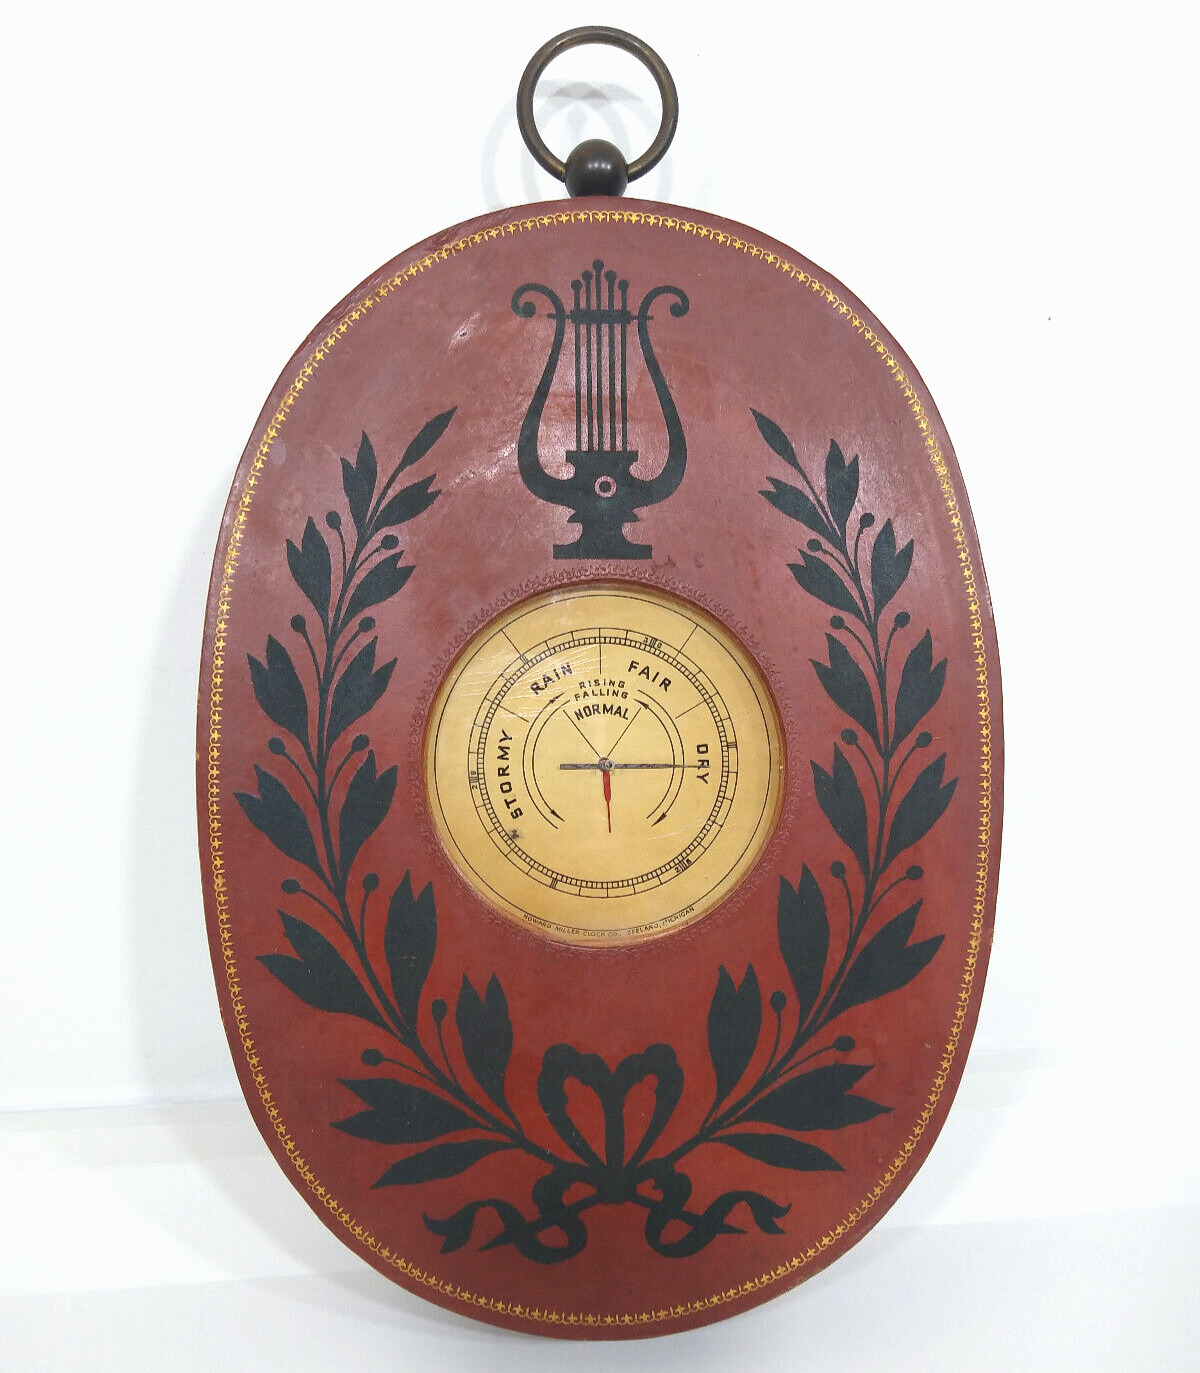 VERY RARE Vintage Howard Miller Barometer in Guilded Leather Laurel Leaf Case